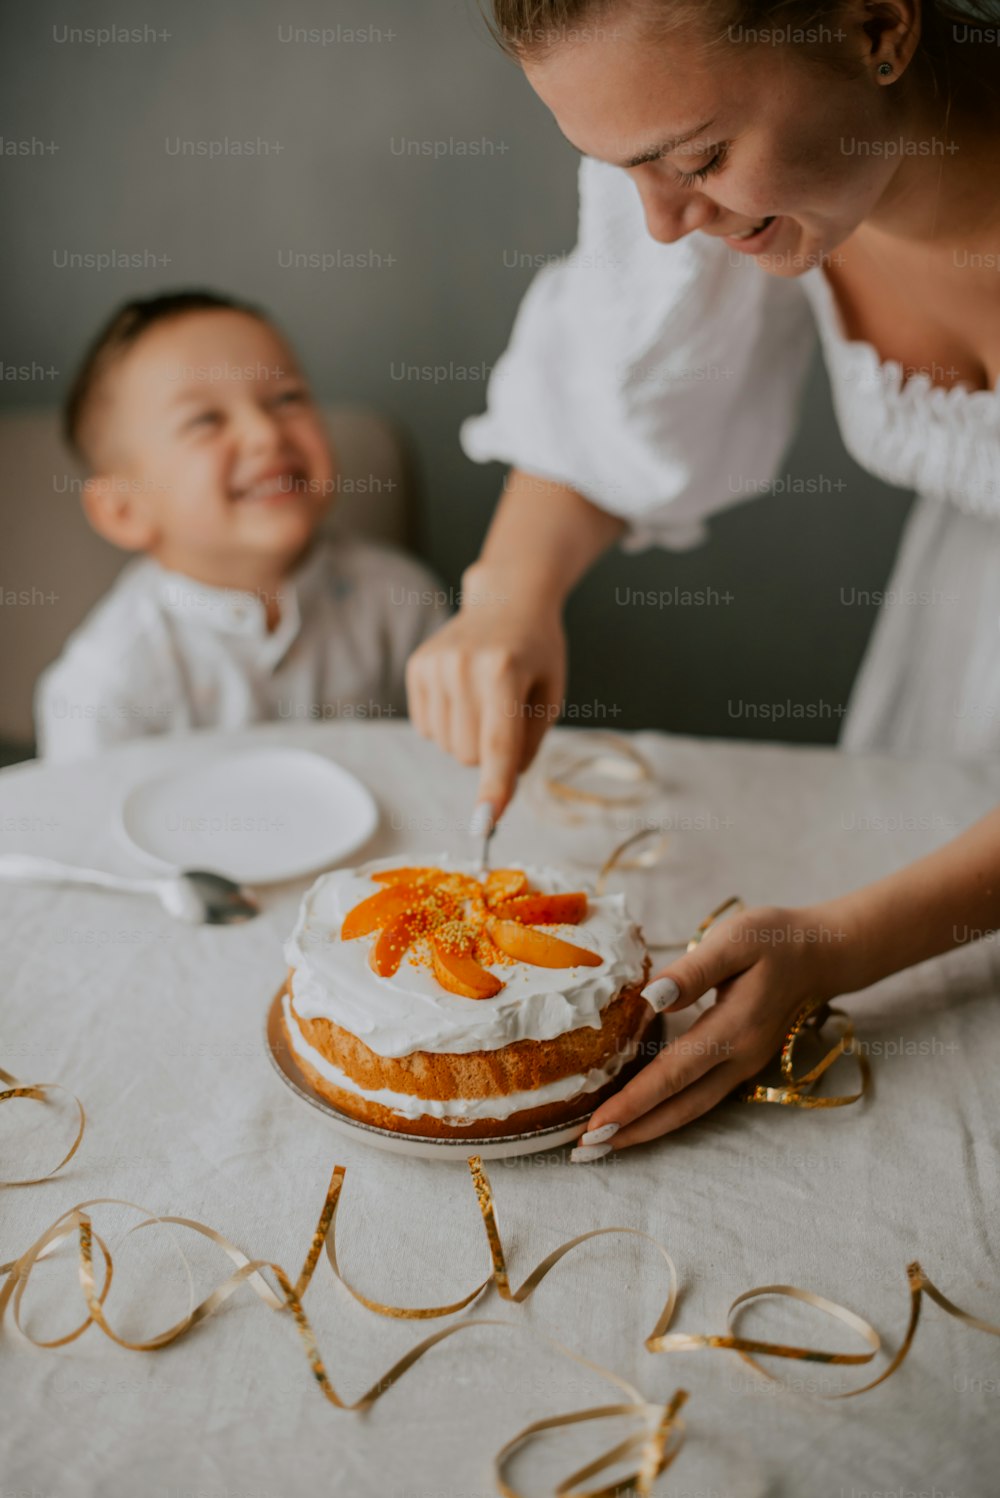 Una mujer cortando un pastel junto a un bebé